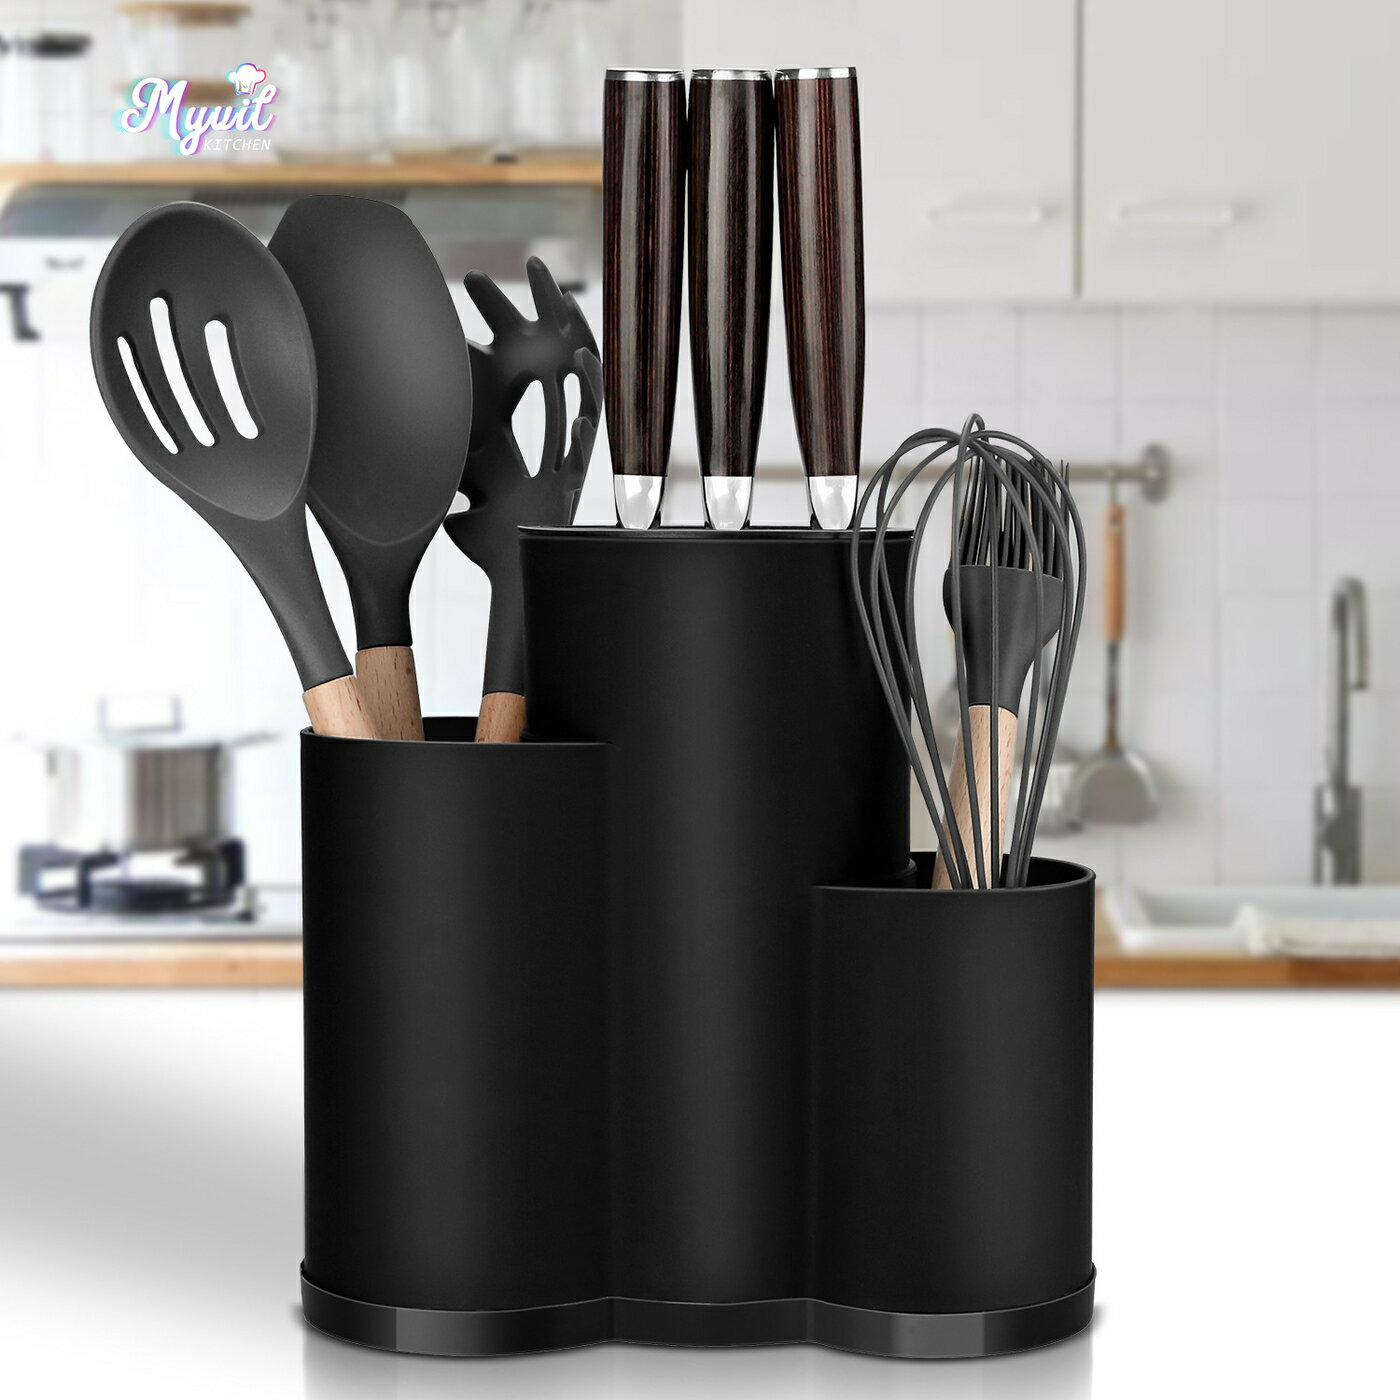 新款置物架刀座 家用廚具刀具餐具收納架 廚房一體收納刀架筒組合